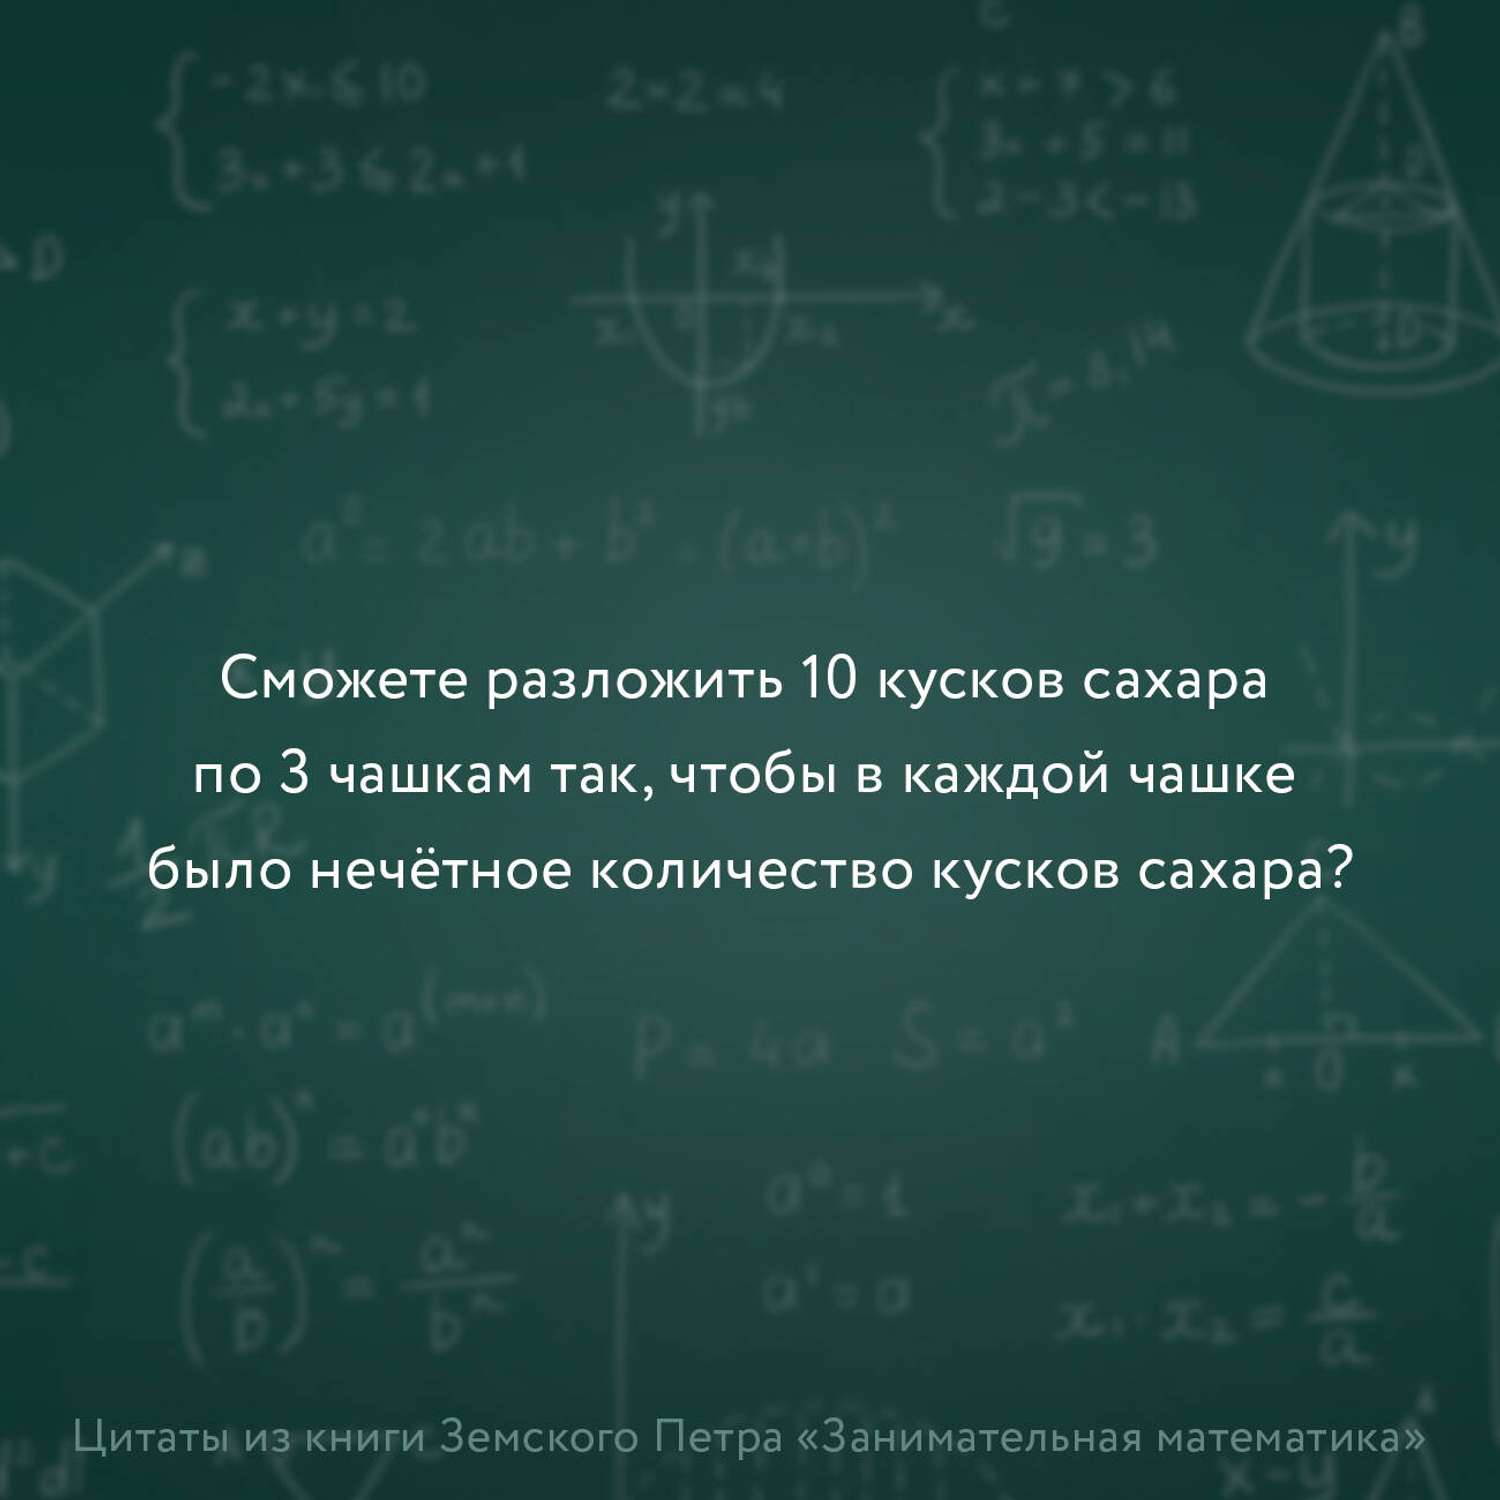 Книги АСТ Занимательная математика для детей и взрослых - фото 5